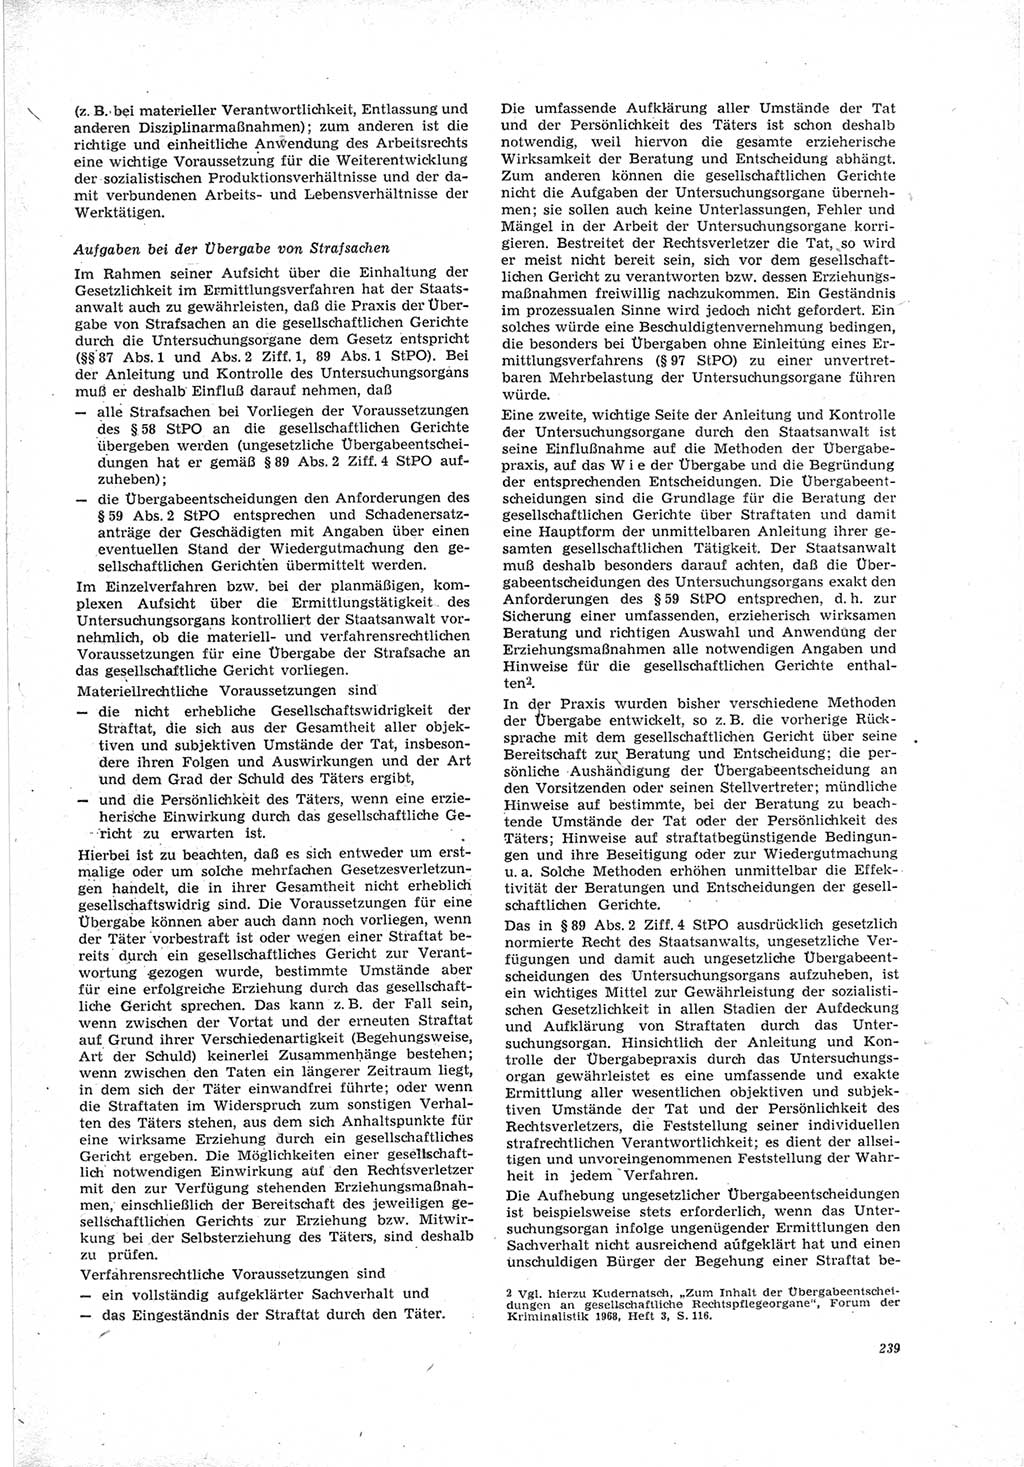 Neue Justiz (NJ), Zeitschrift für Recht und Rechtswissenschaft [Deutsche Demokratische Republik (DDR)], 23. Jahrgang 1969, Seite 239 (NJ DDR 1969, S. 239)